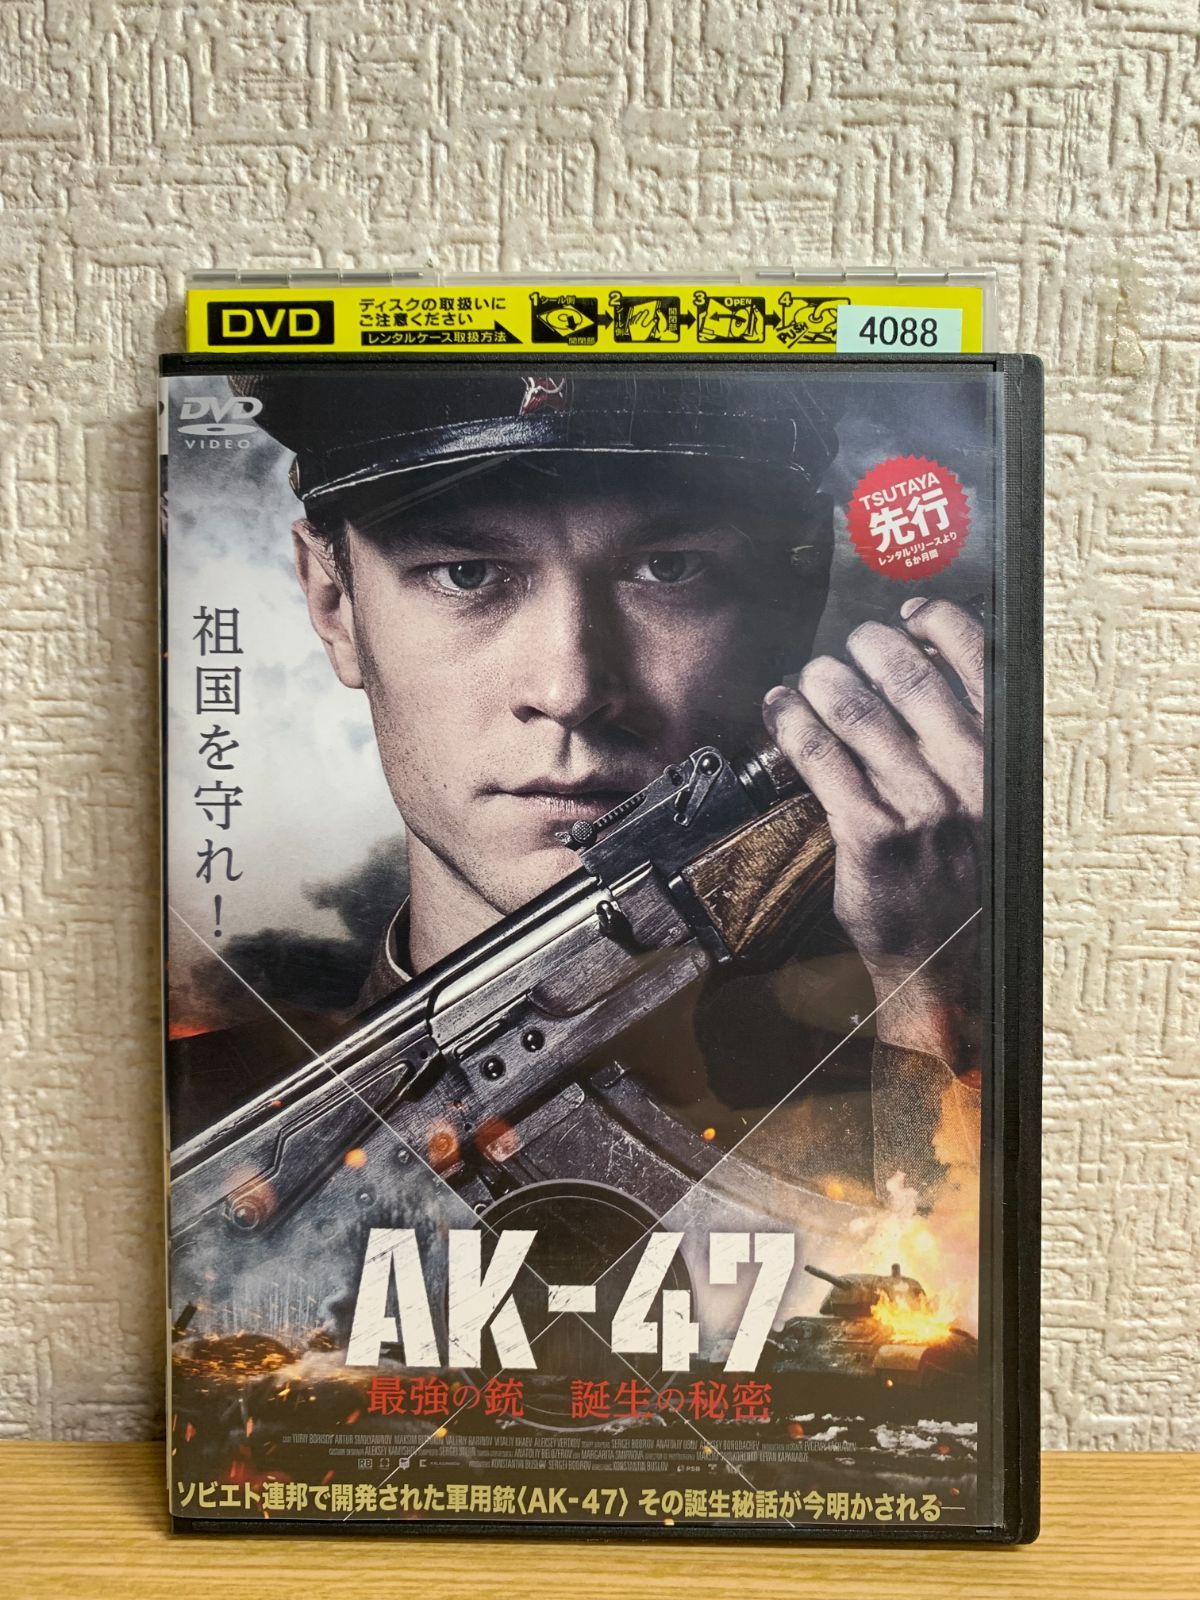 東京マルイ 次世代電動ガンAK47 AK-47最強の銃 誕生の秘密 DVD -